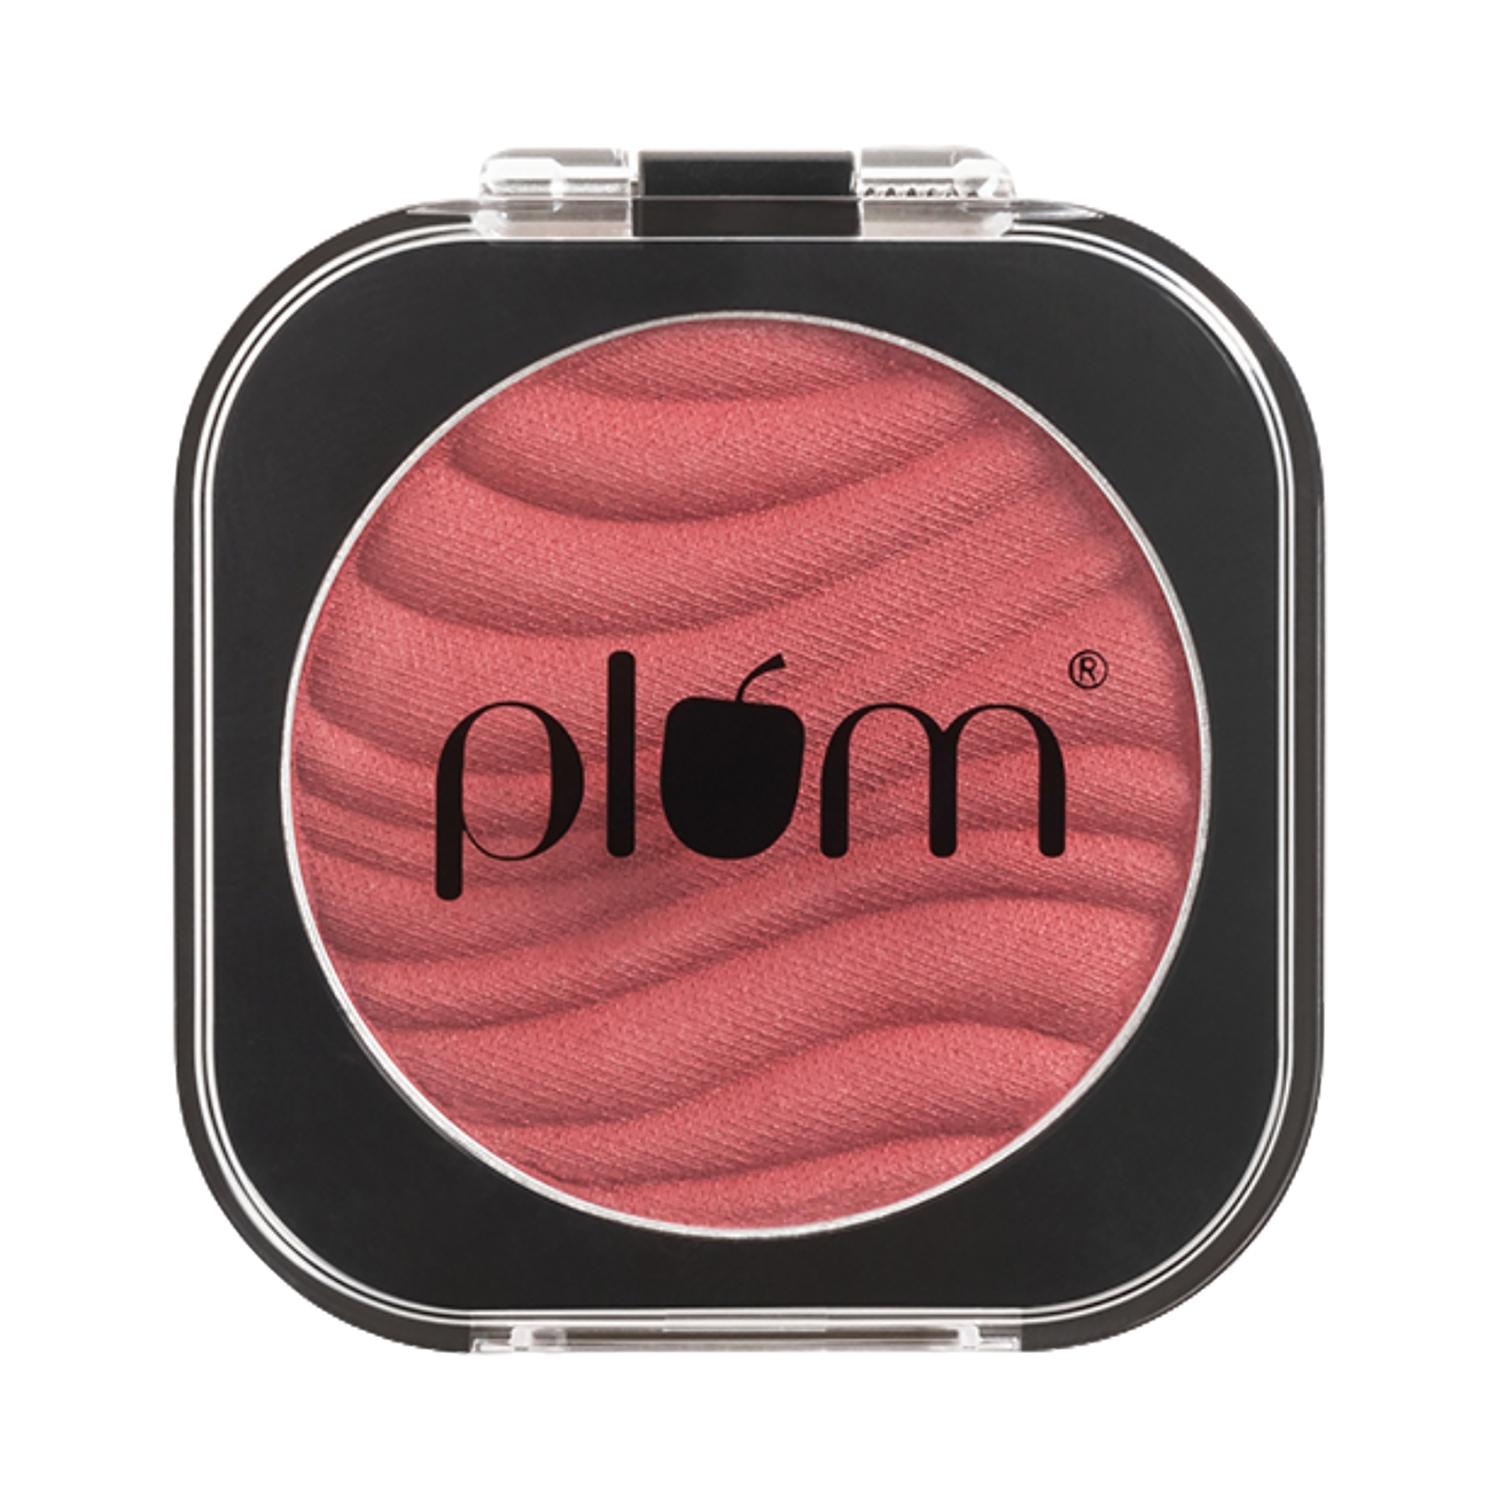 plum cheek-a-boo matte blush - 123 one in a melon (4.5g)